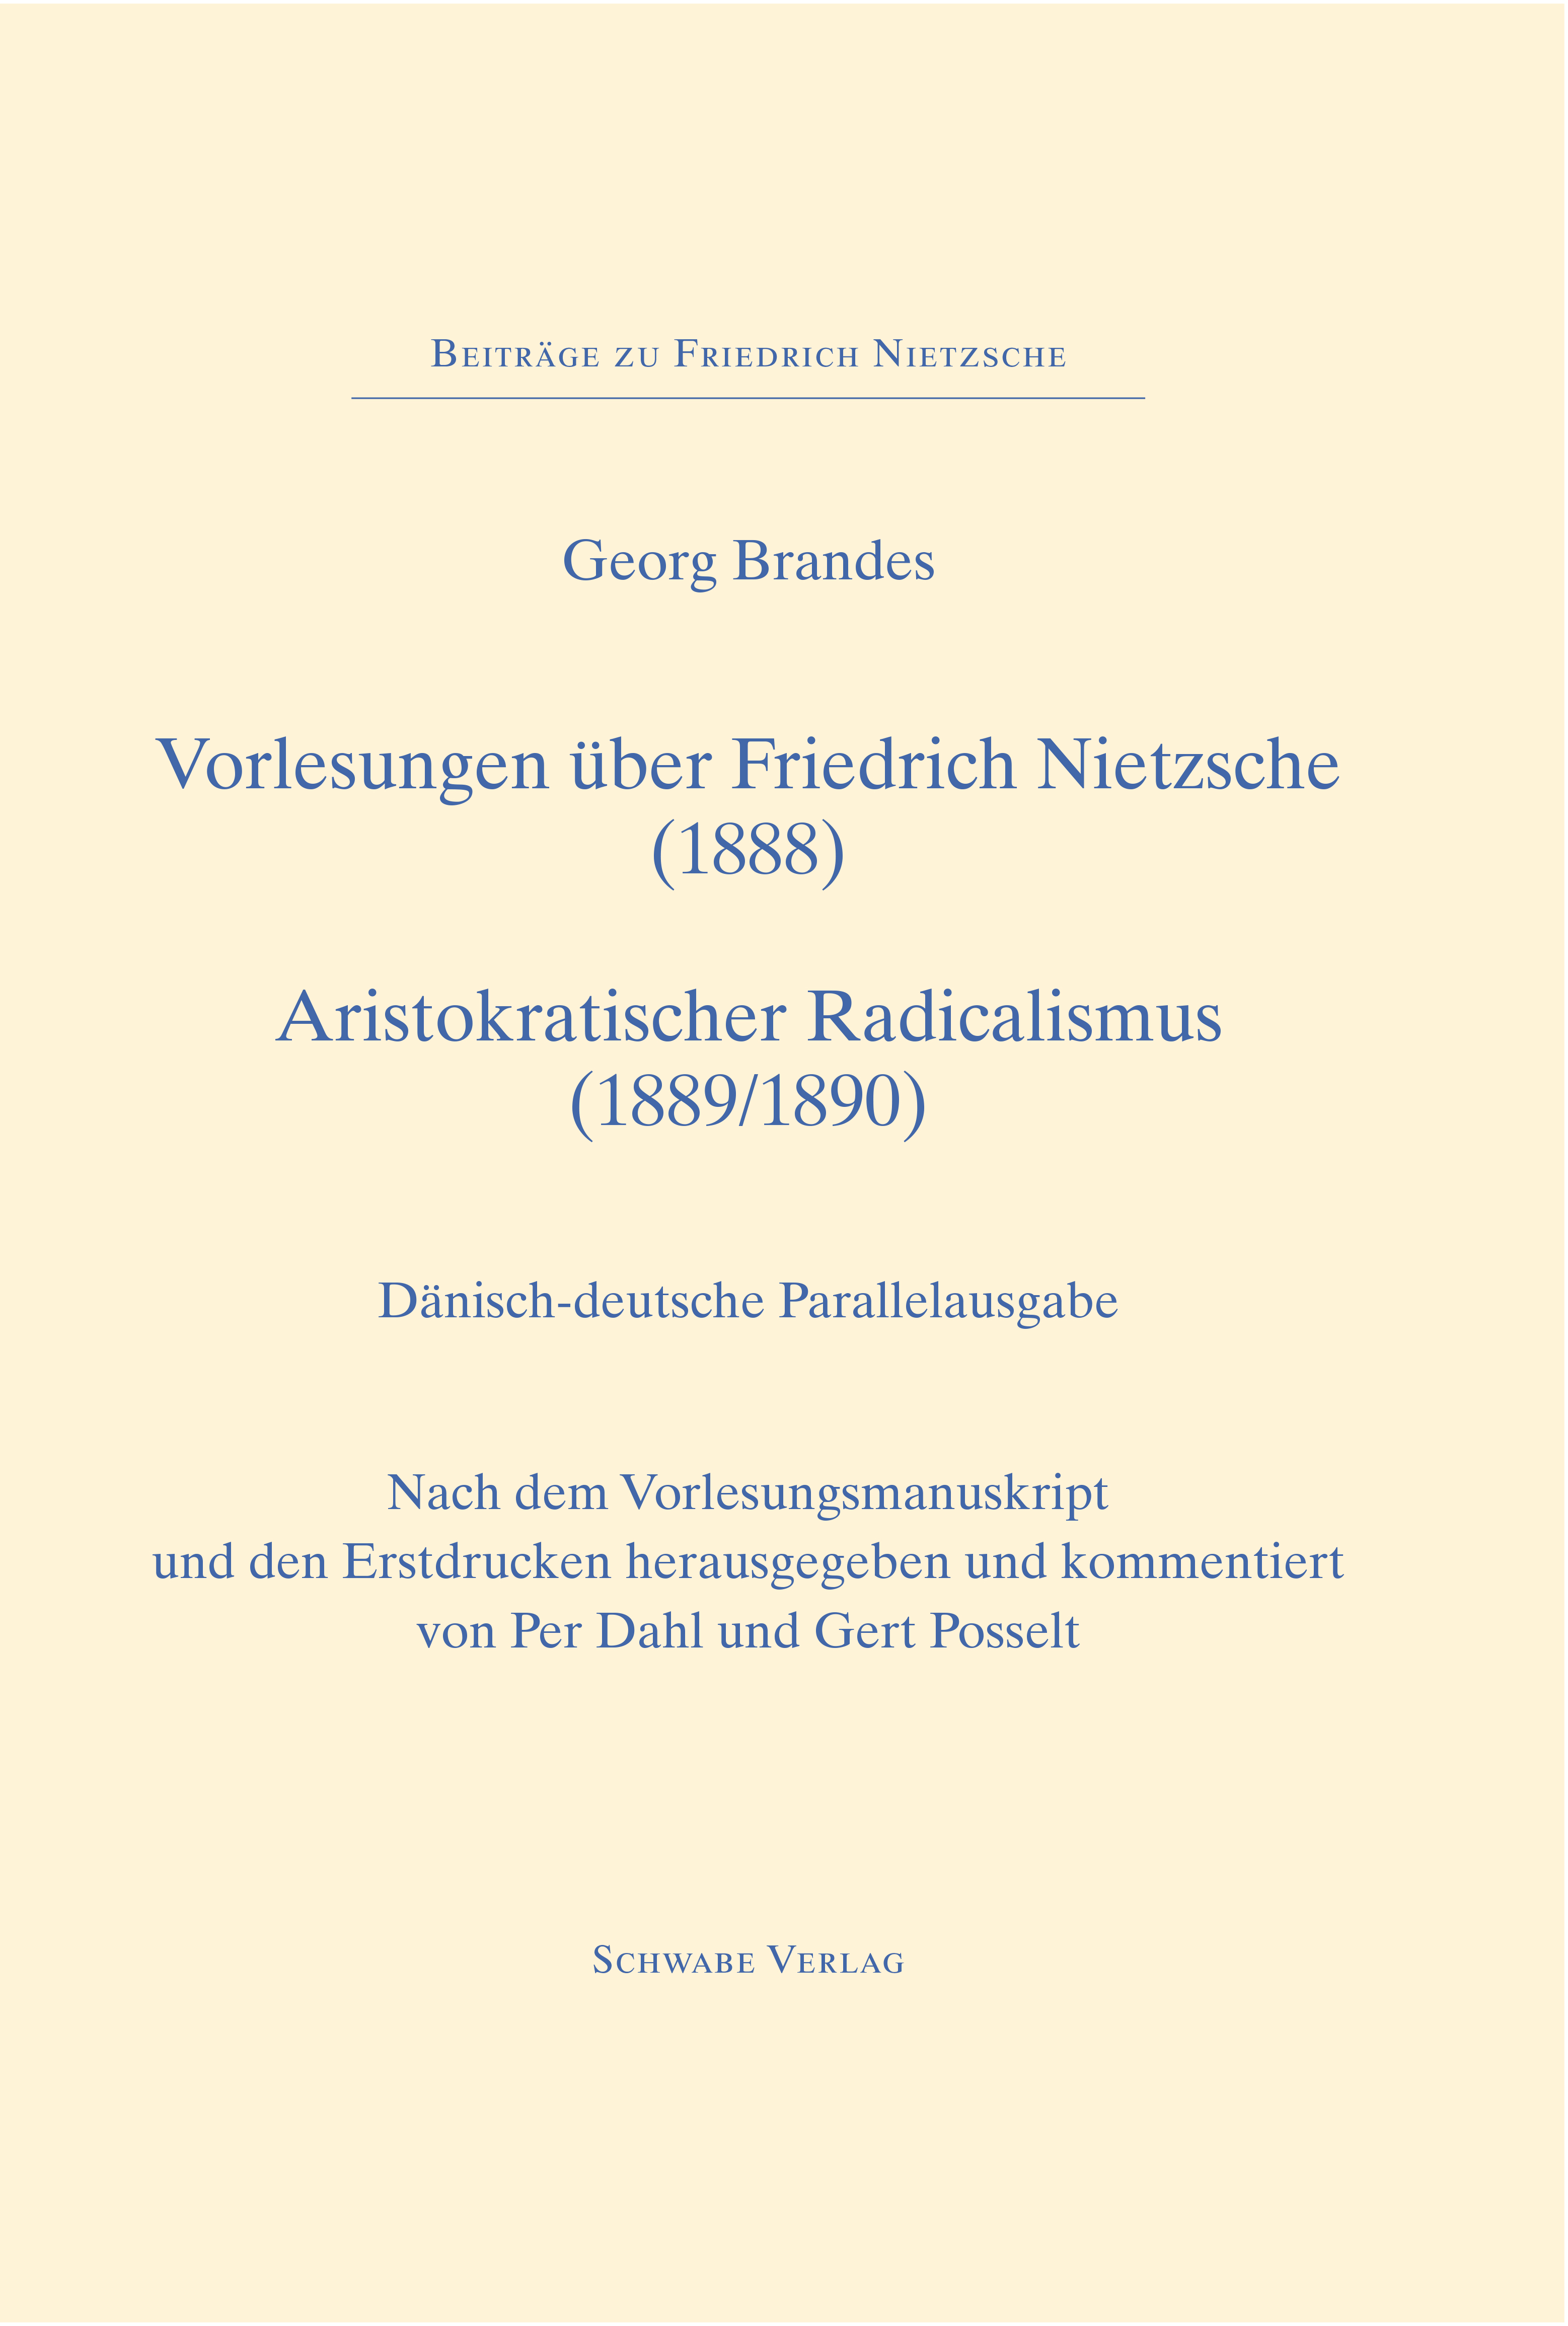 Georg Brandes’ forelæsninger om Nietzsche udgives for første gang